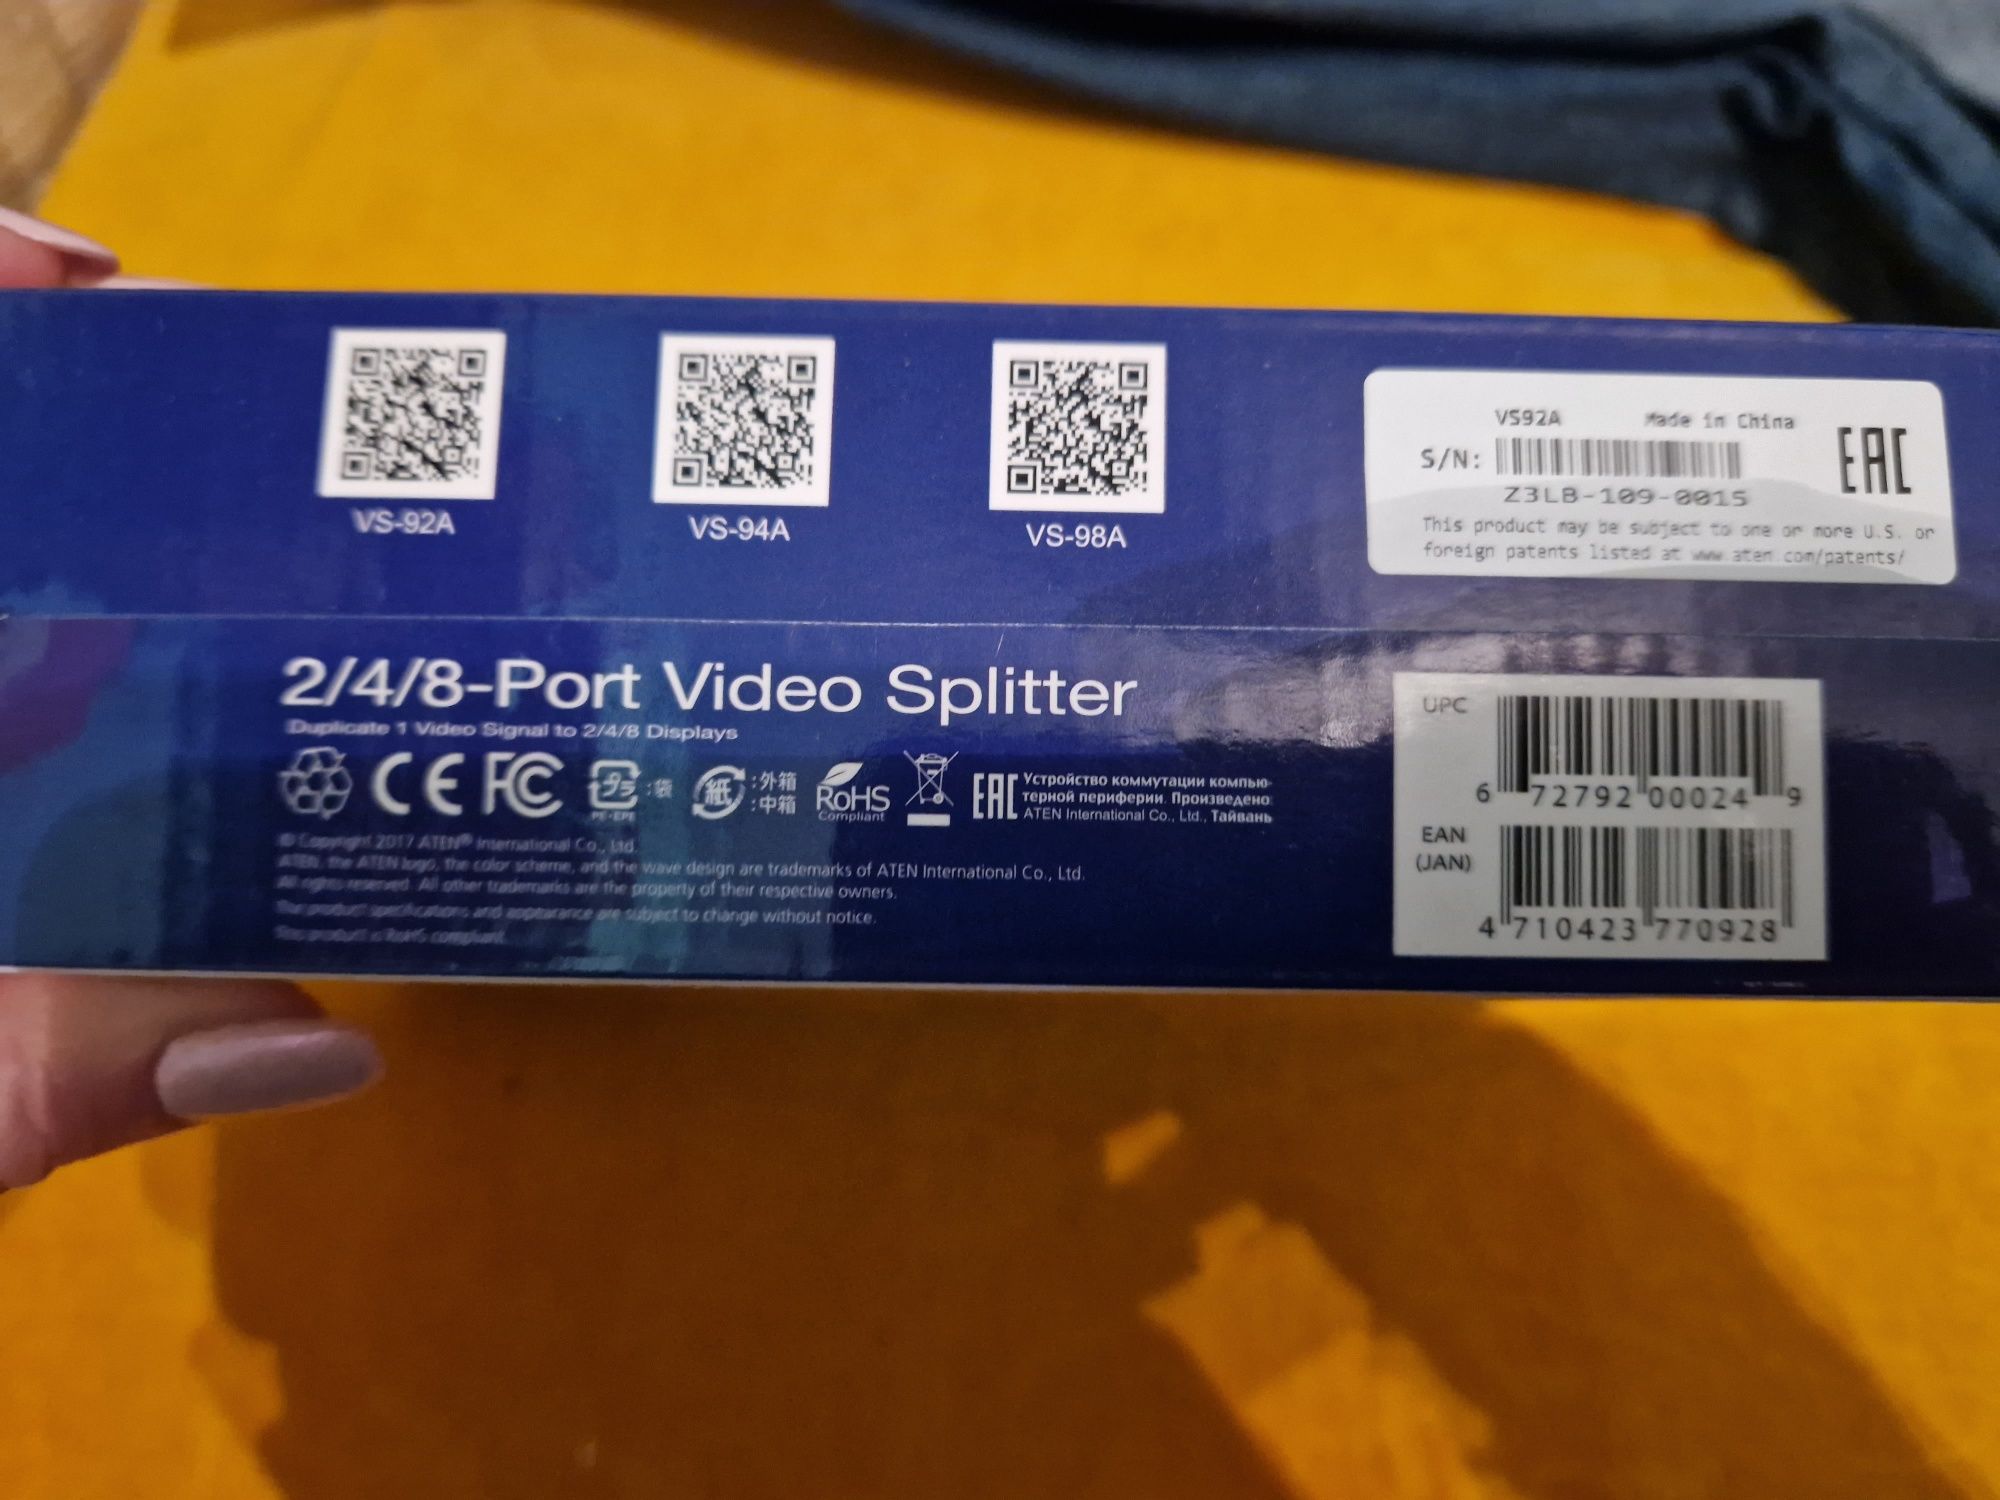 Video Splitter VS 92 A 2/4/8